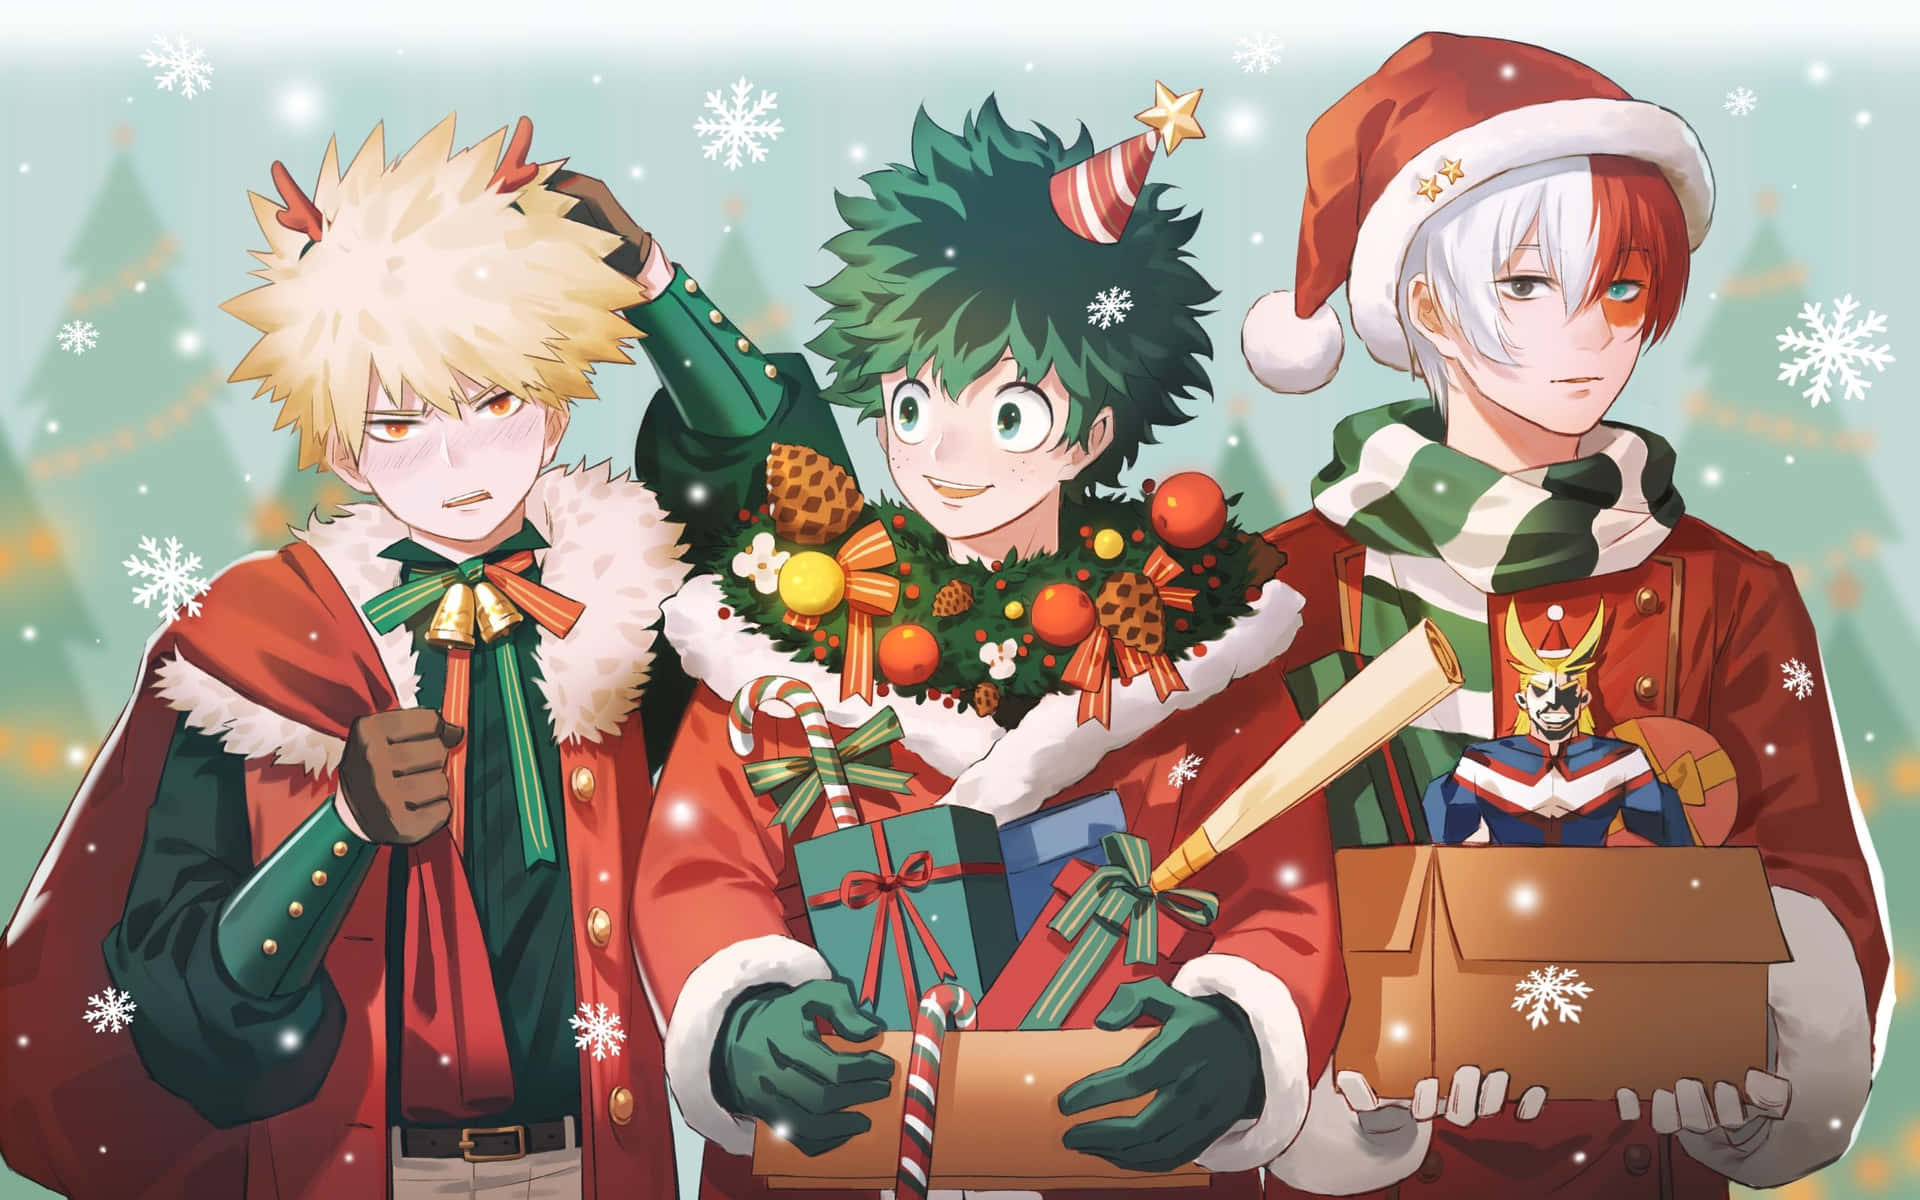 Cùng chào đón mùa Noel với bộ sưu tập đẹp mắt của My Hero Academia . Những Cute Christmas My Hero Academia wallpaper được thiết kế độc đáo và phù hợp với không khí của mùa lễ này. Tràn đầy niềm vui và sự phấn khích đến Giáng Sinh.